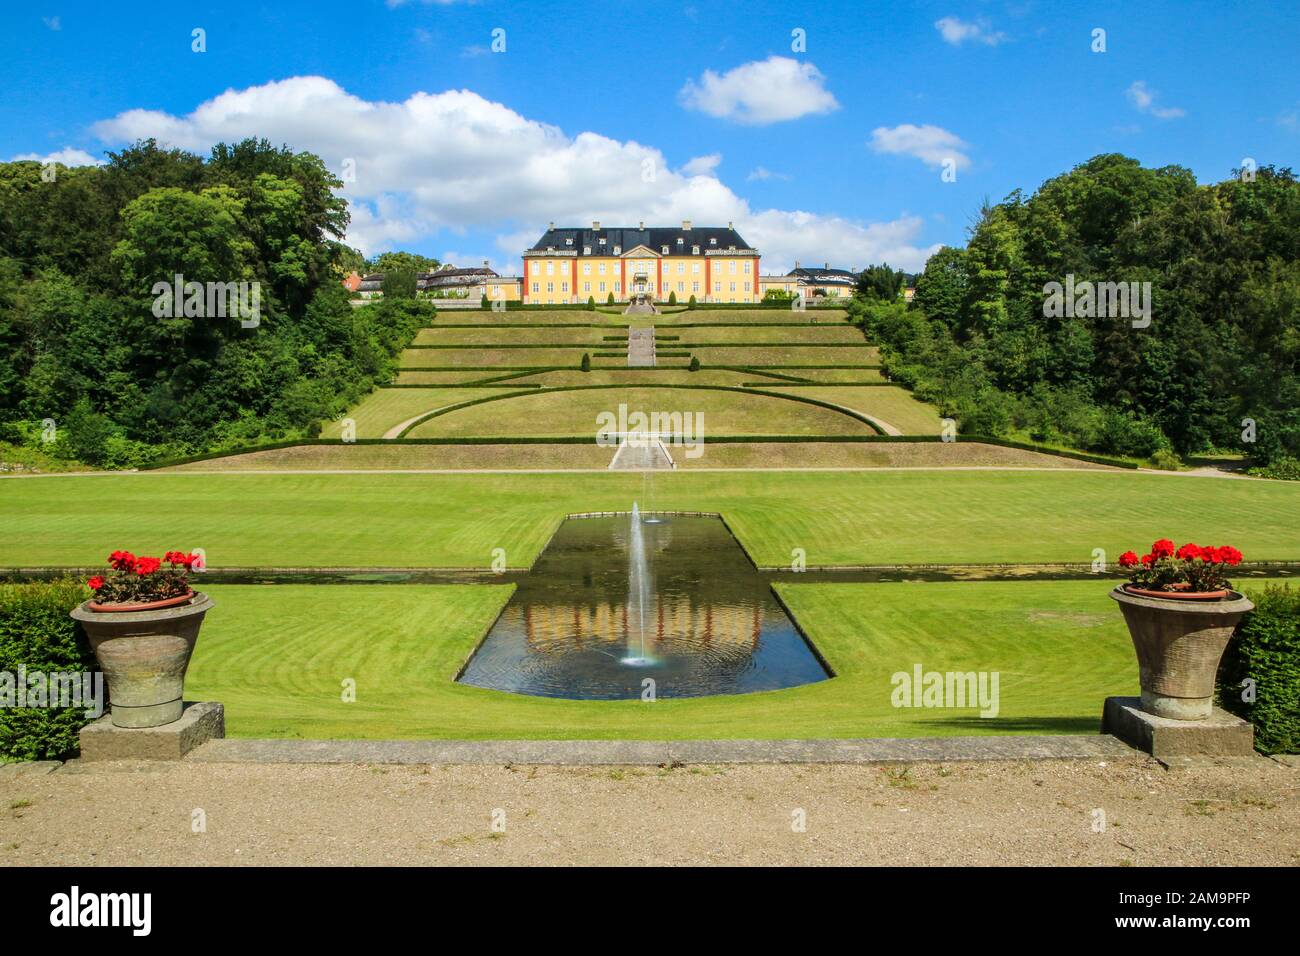 Das Schloss Ledreborg in Dänemark mit seinem schönen Park. Ein schöner Anblick für die Touristen. Stockfoto